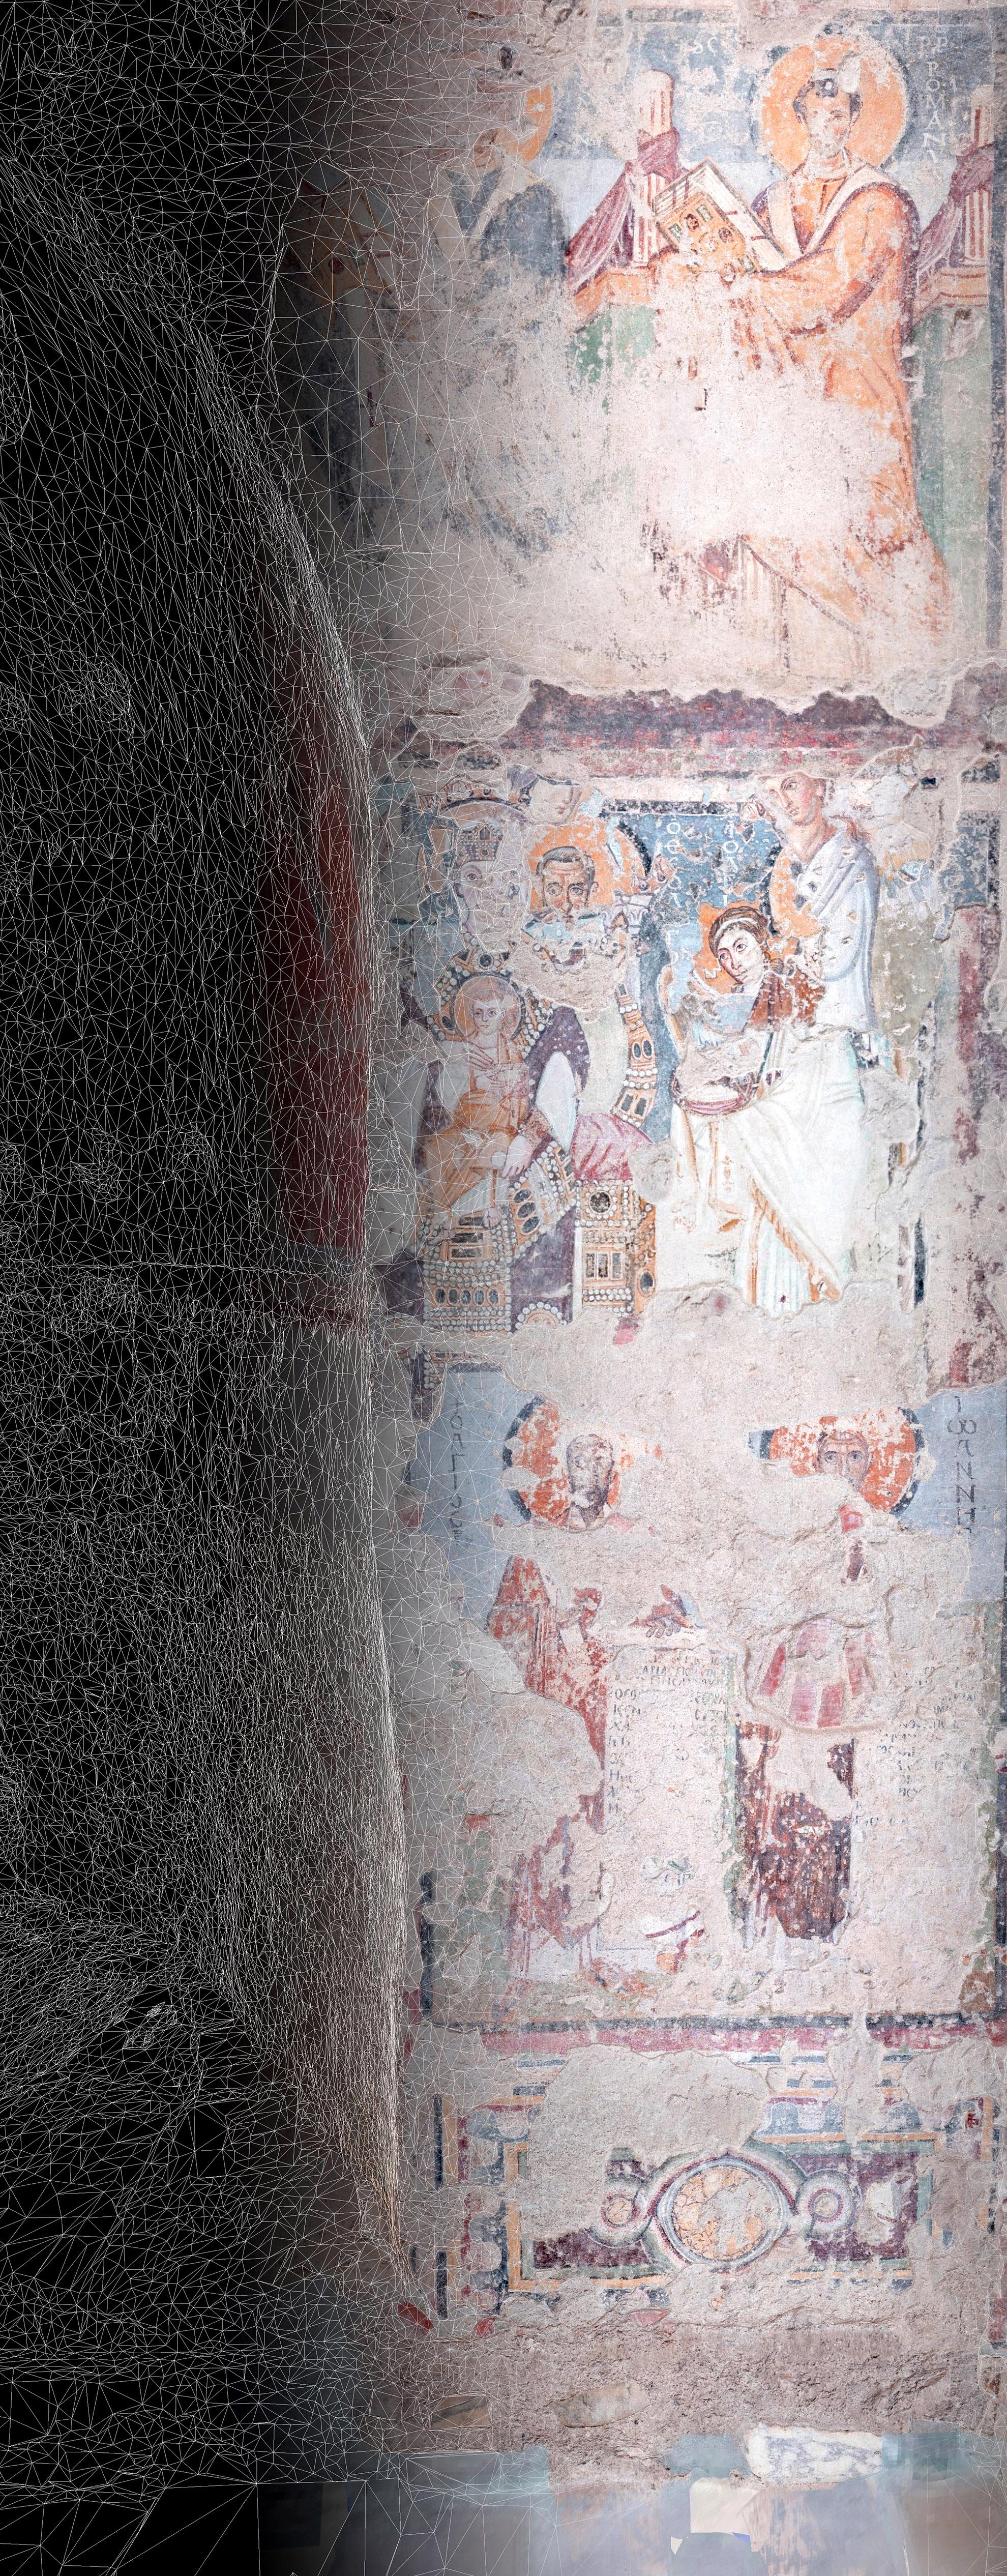 Ecco Santa Maria Antiqua! Viaggio virtuale nella cappella Sistina del Medioevo Here is Santa Maria Antiqua! Virtual journey through the Sistine Chapel of the Middle Ages